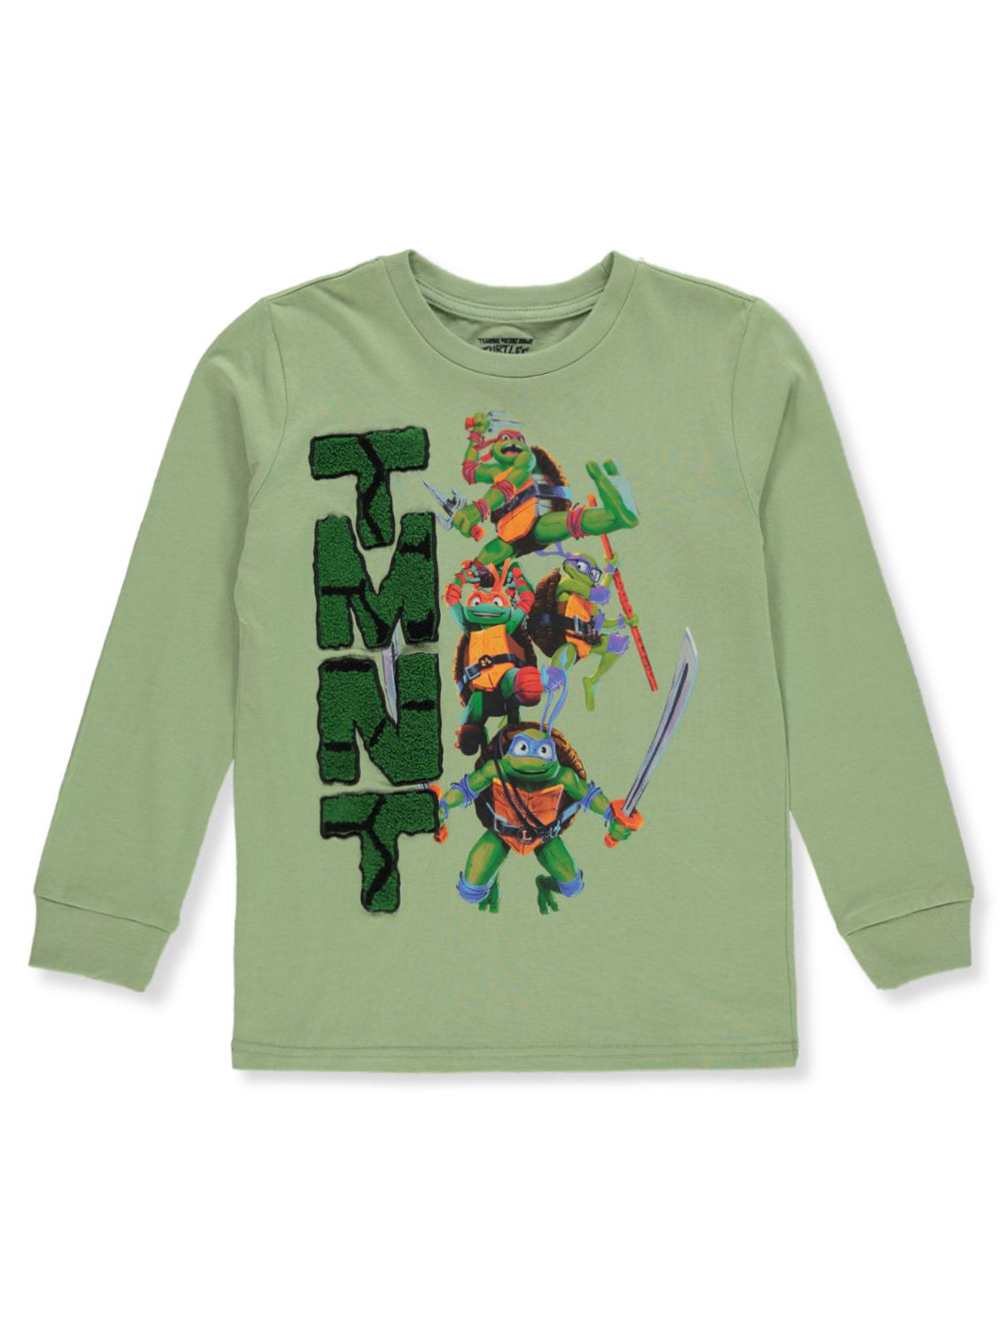 Teenage Mutant Ninja Turtles Boys' L/S T-Shirt - Olive, 14 - 16